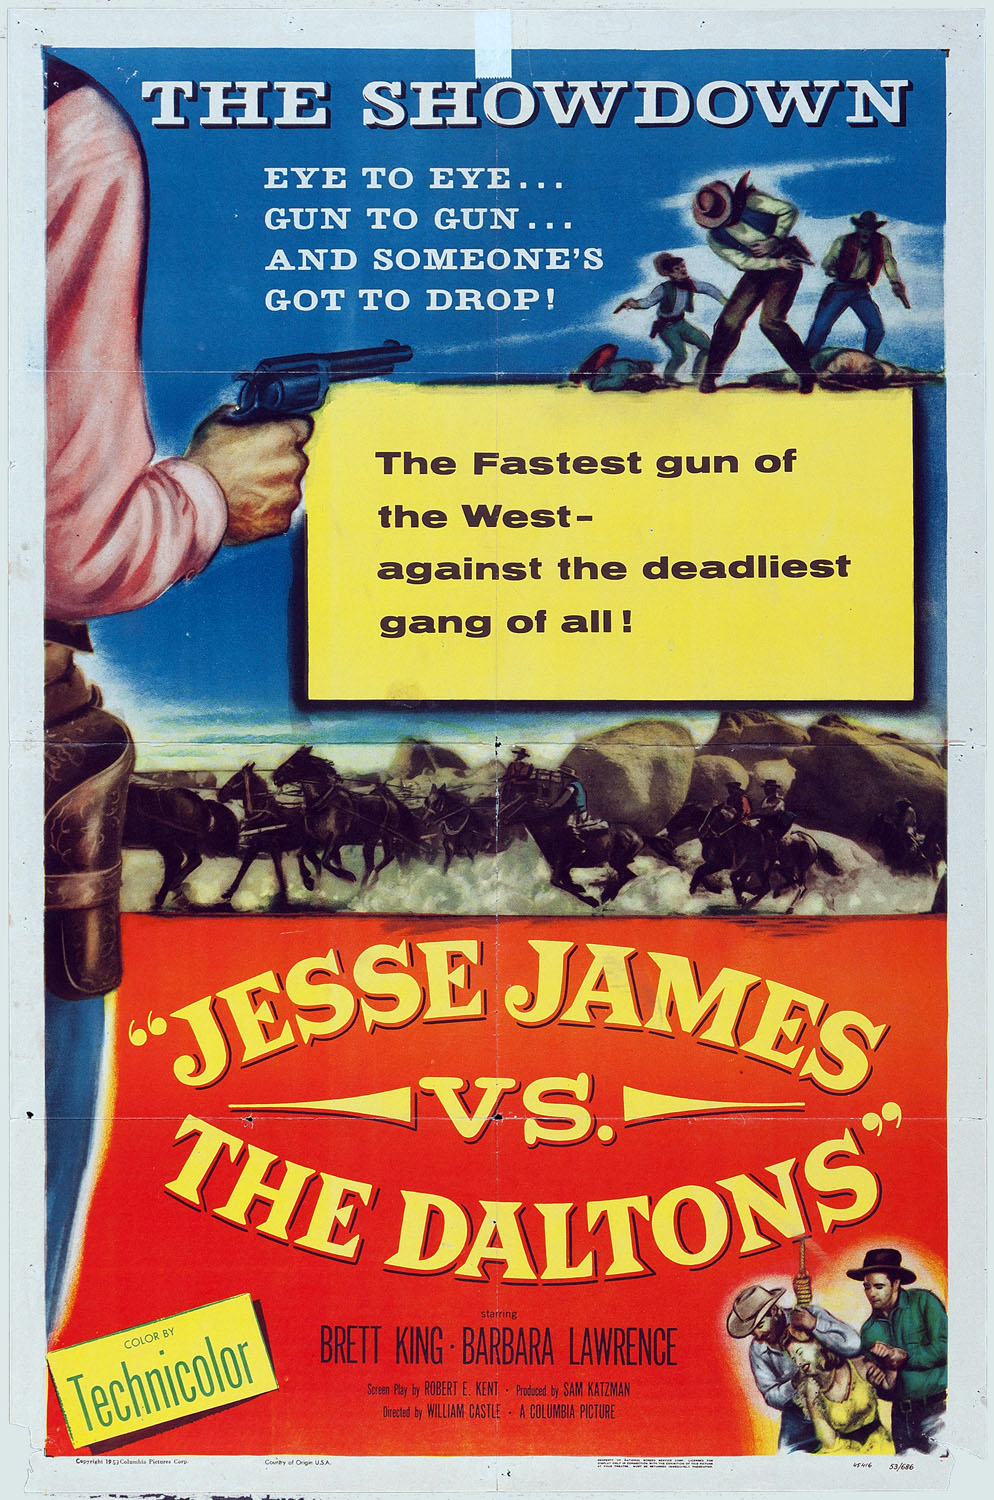 JESSE JAMES VS. THE DALTONS